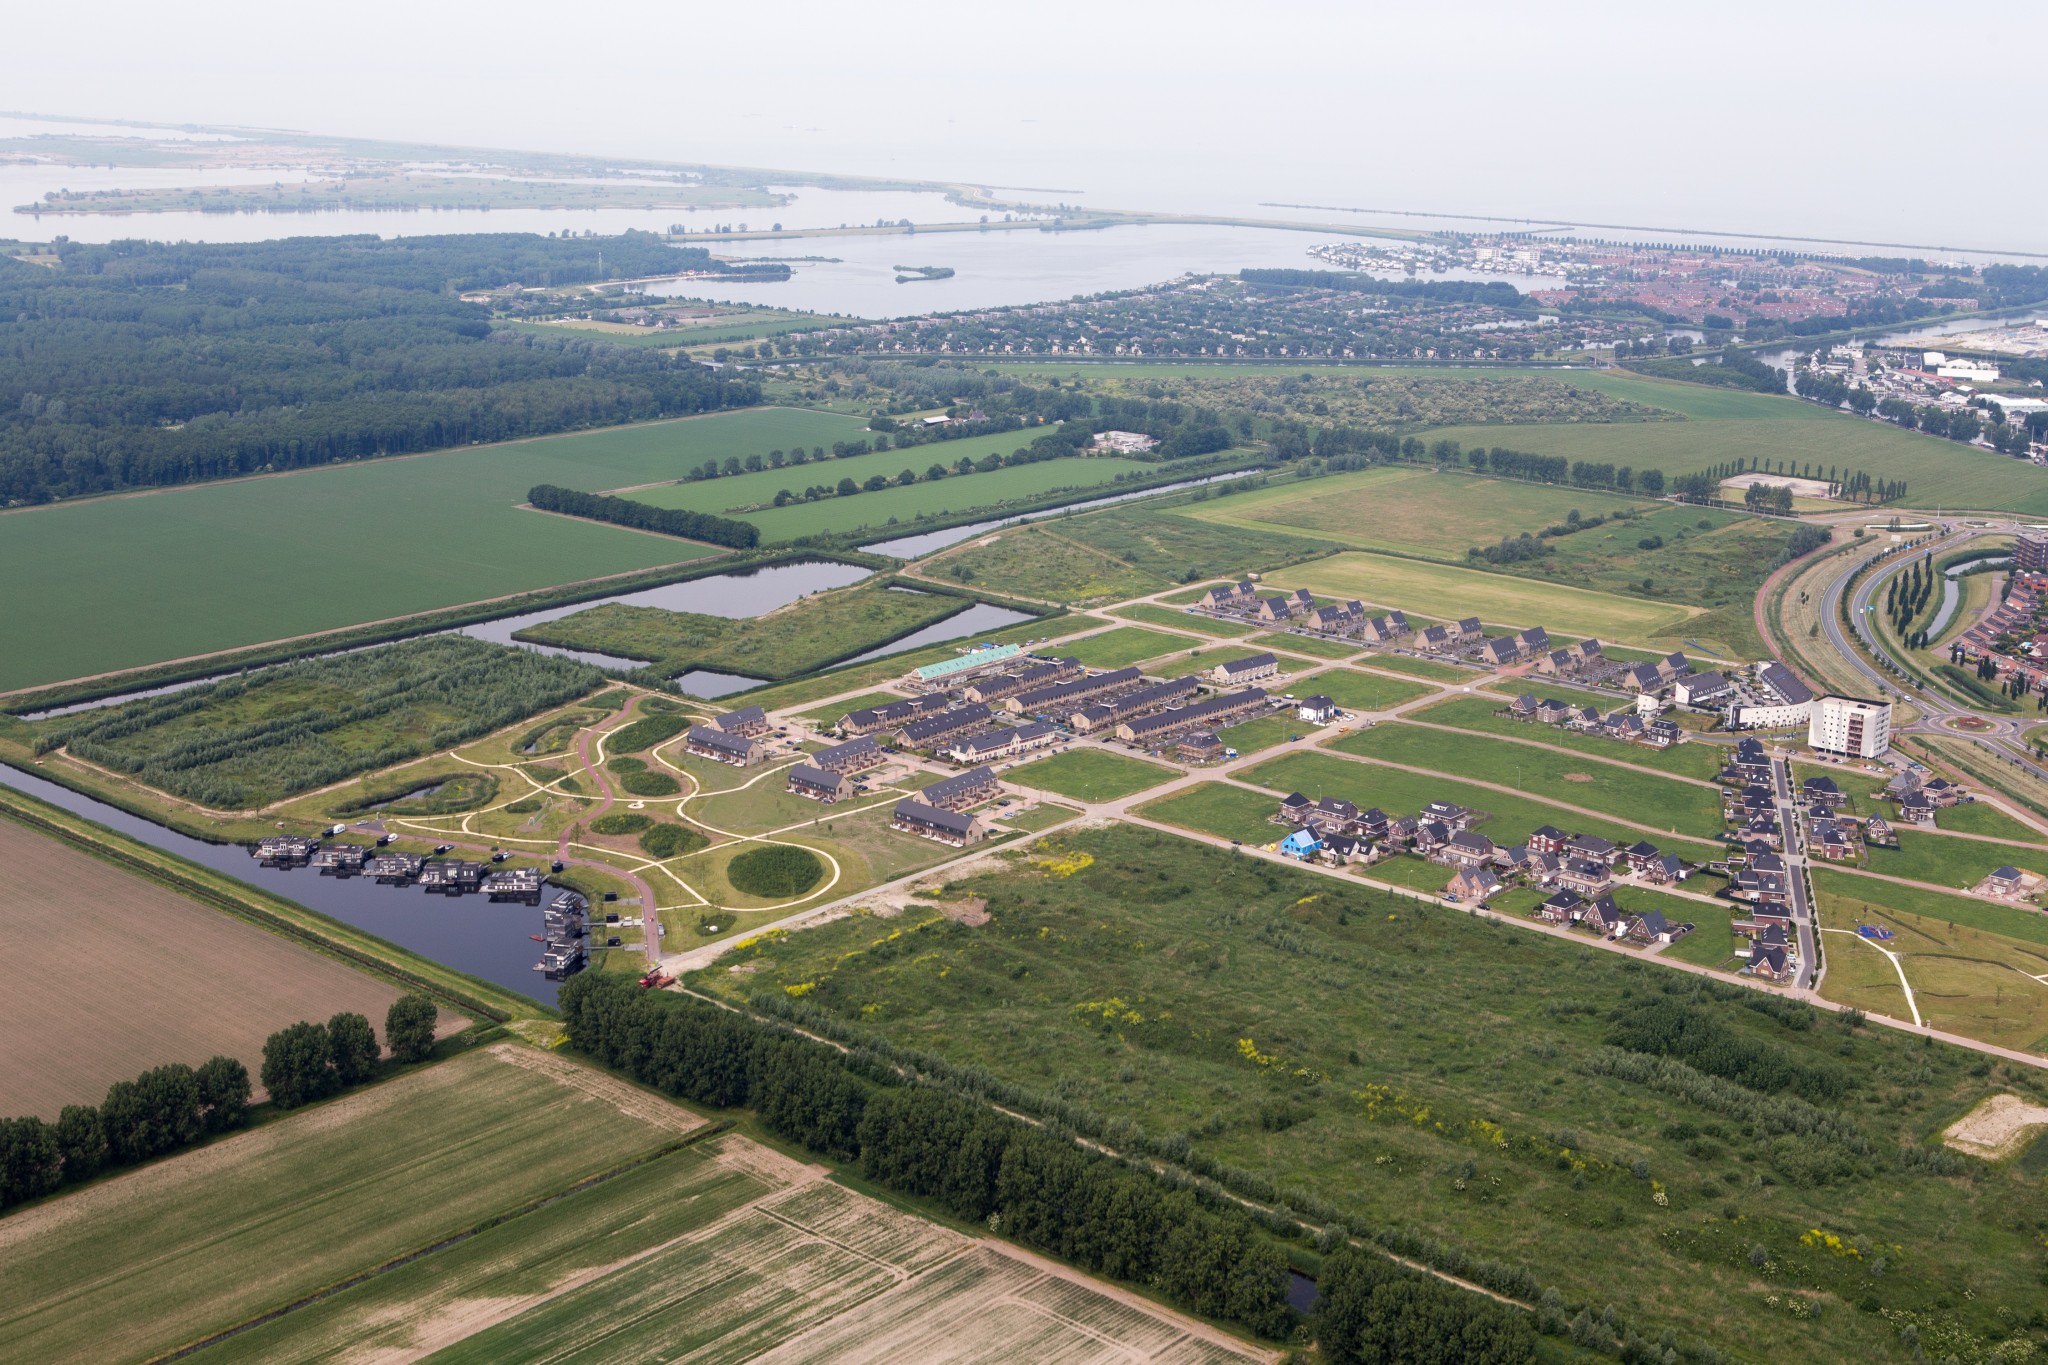 Becks Zich voorstellen Drijvende kracht Kavel kopen: zelf bouwen Lelystad – Wonen in Lelystad